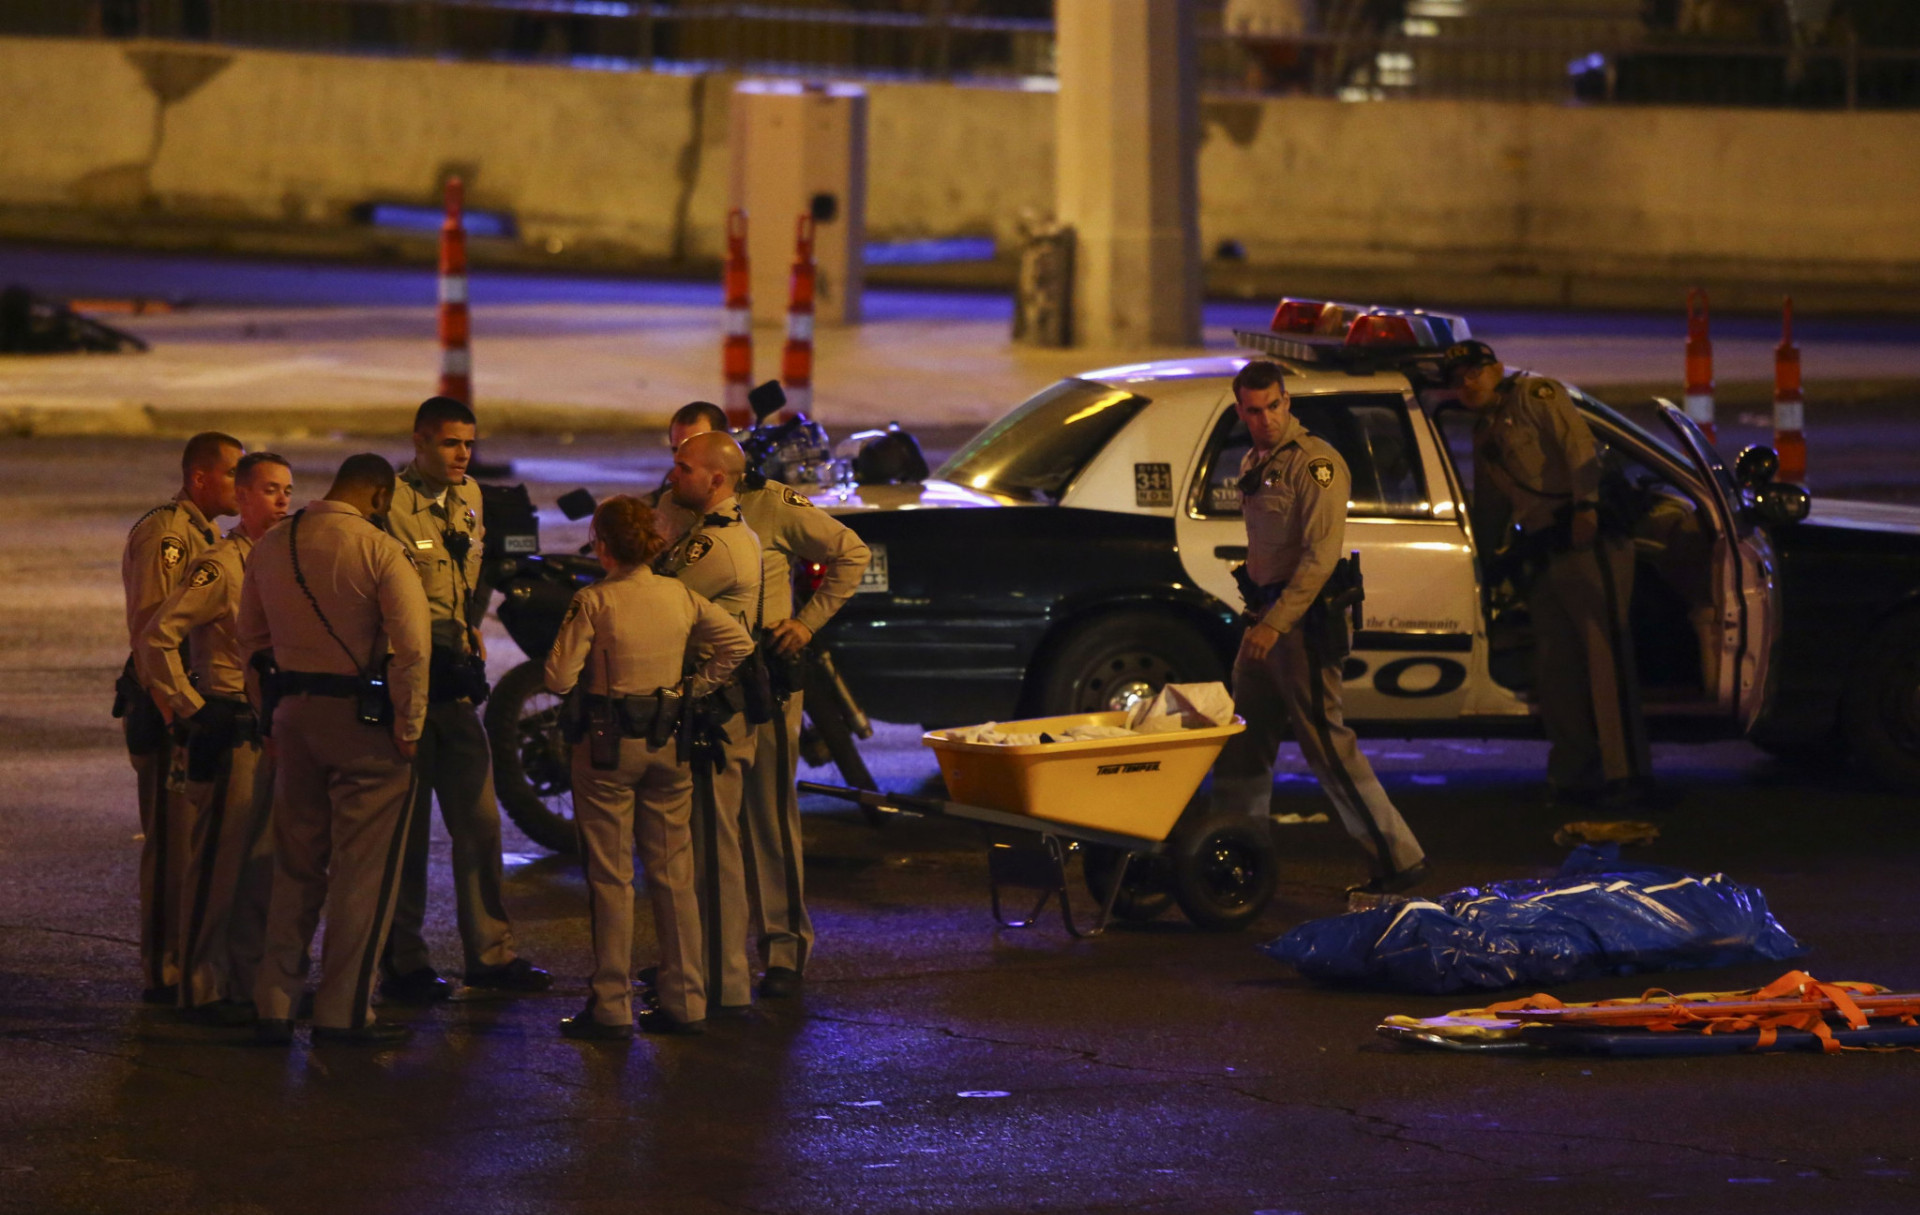 Na miesto streľby v Las Vegas okamžite prišlo množstvo policajtov aj záchranárov, ktorí odvážali zranených do nemocnice.